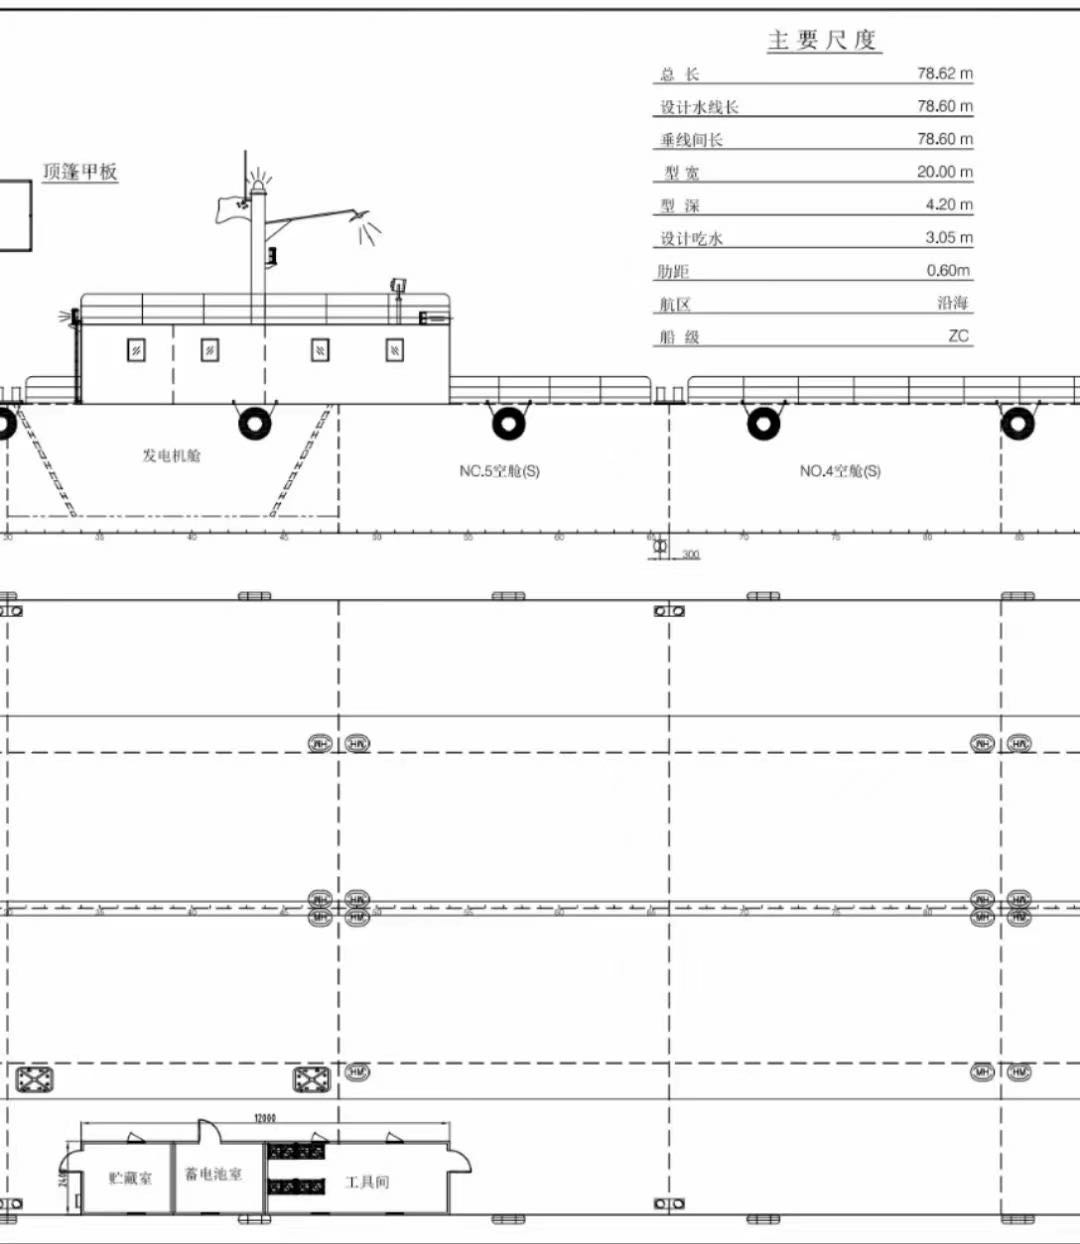 出售沿海78.6米长无动力驳船